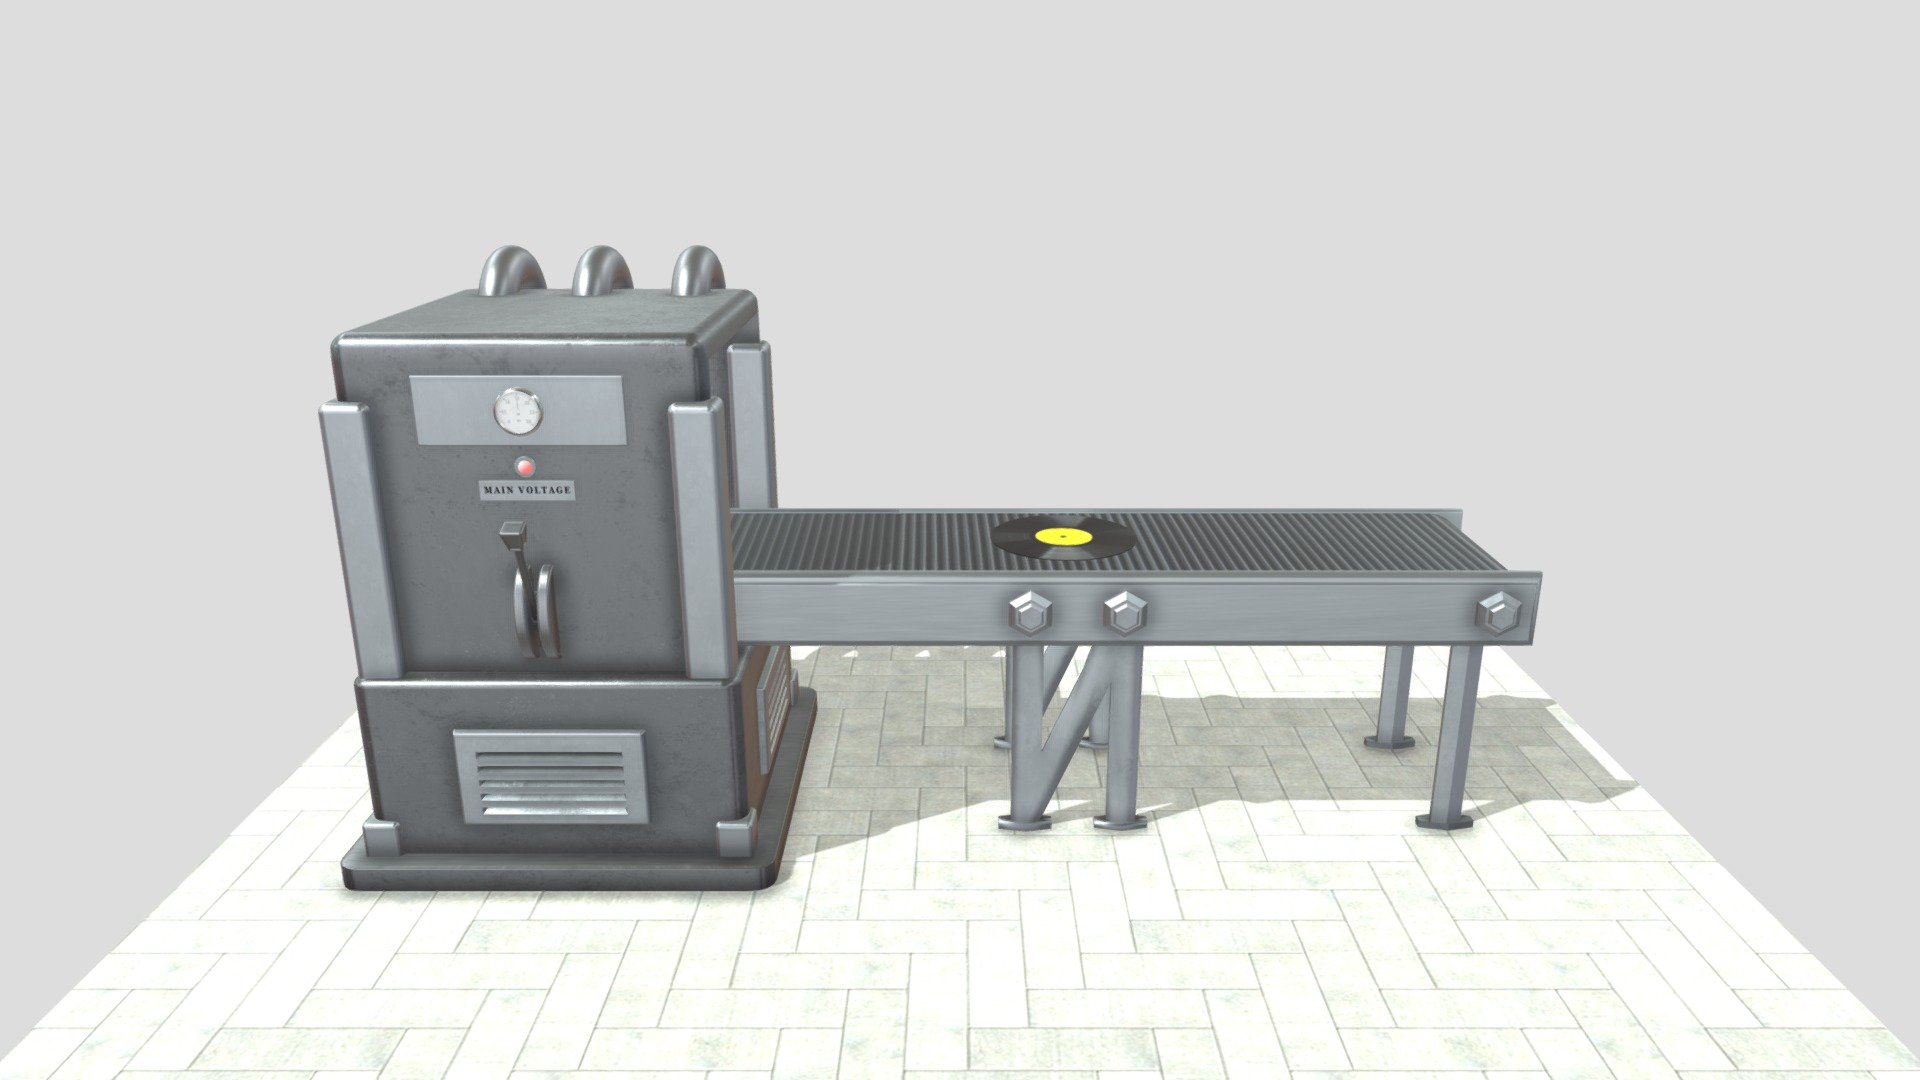 Industrial Conveyor Belt - 3D model by Juan Sebastian Solano (@Juan.Sebastian.Solano) 3d model